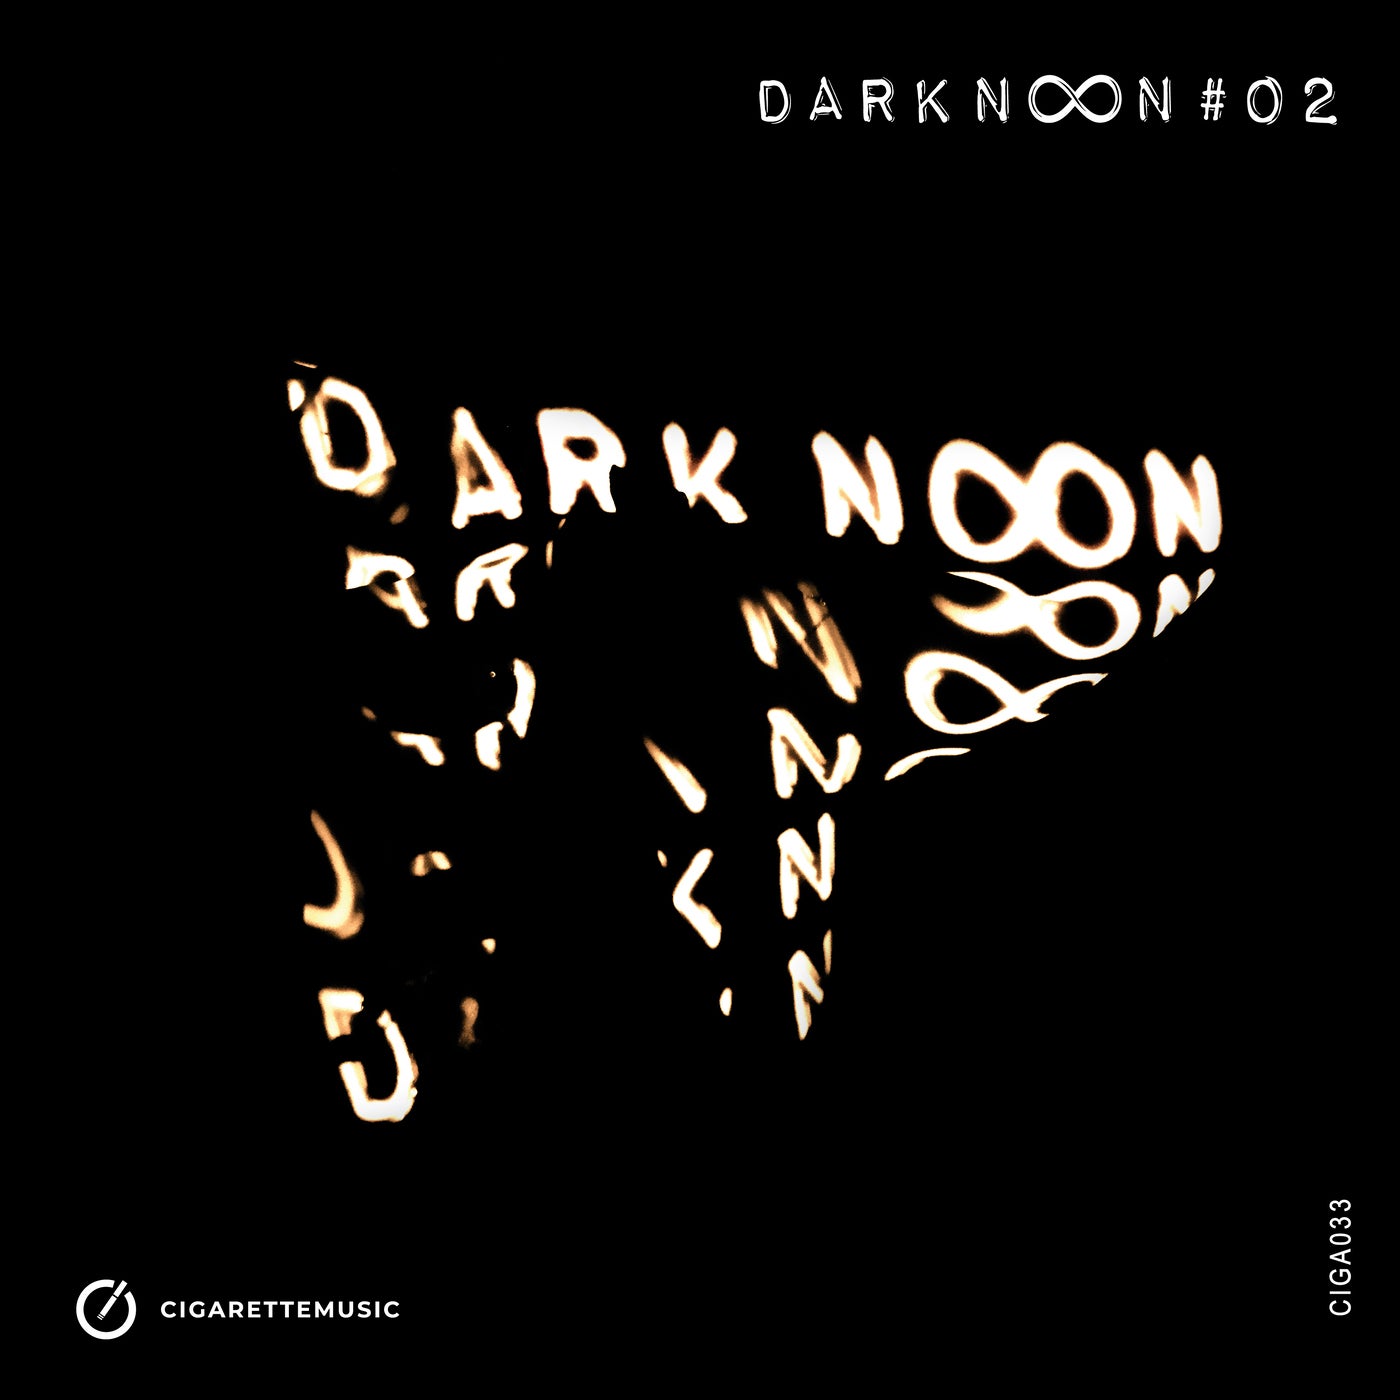 Notron, Super Jupiter – Darknoon #02 [CIGA033]